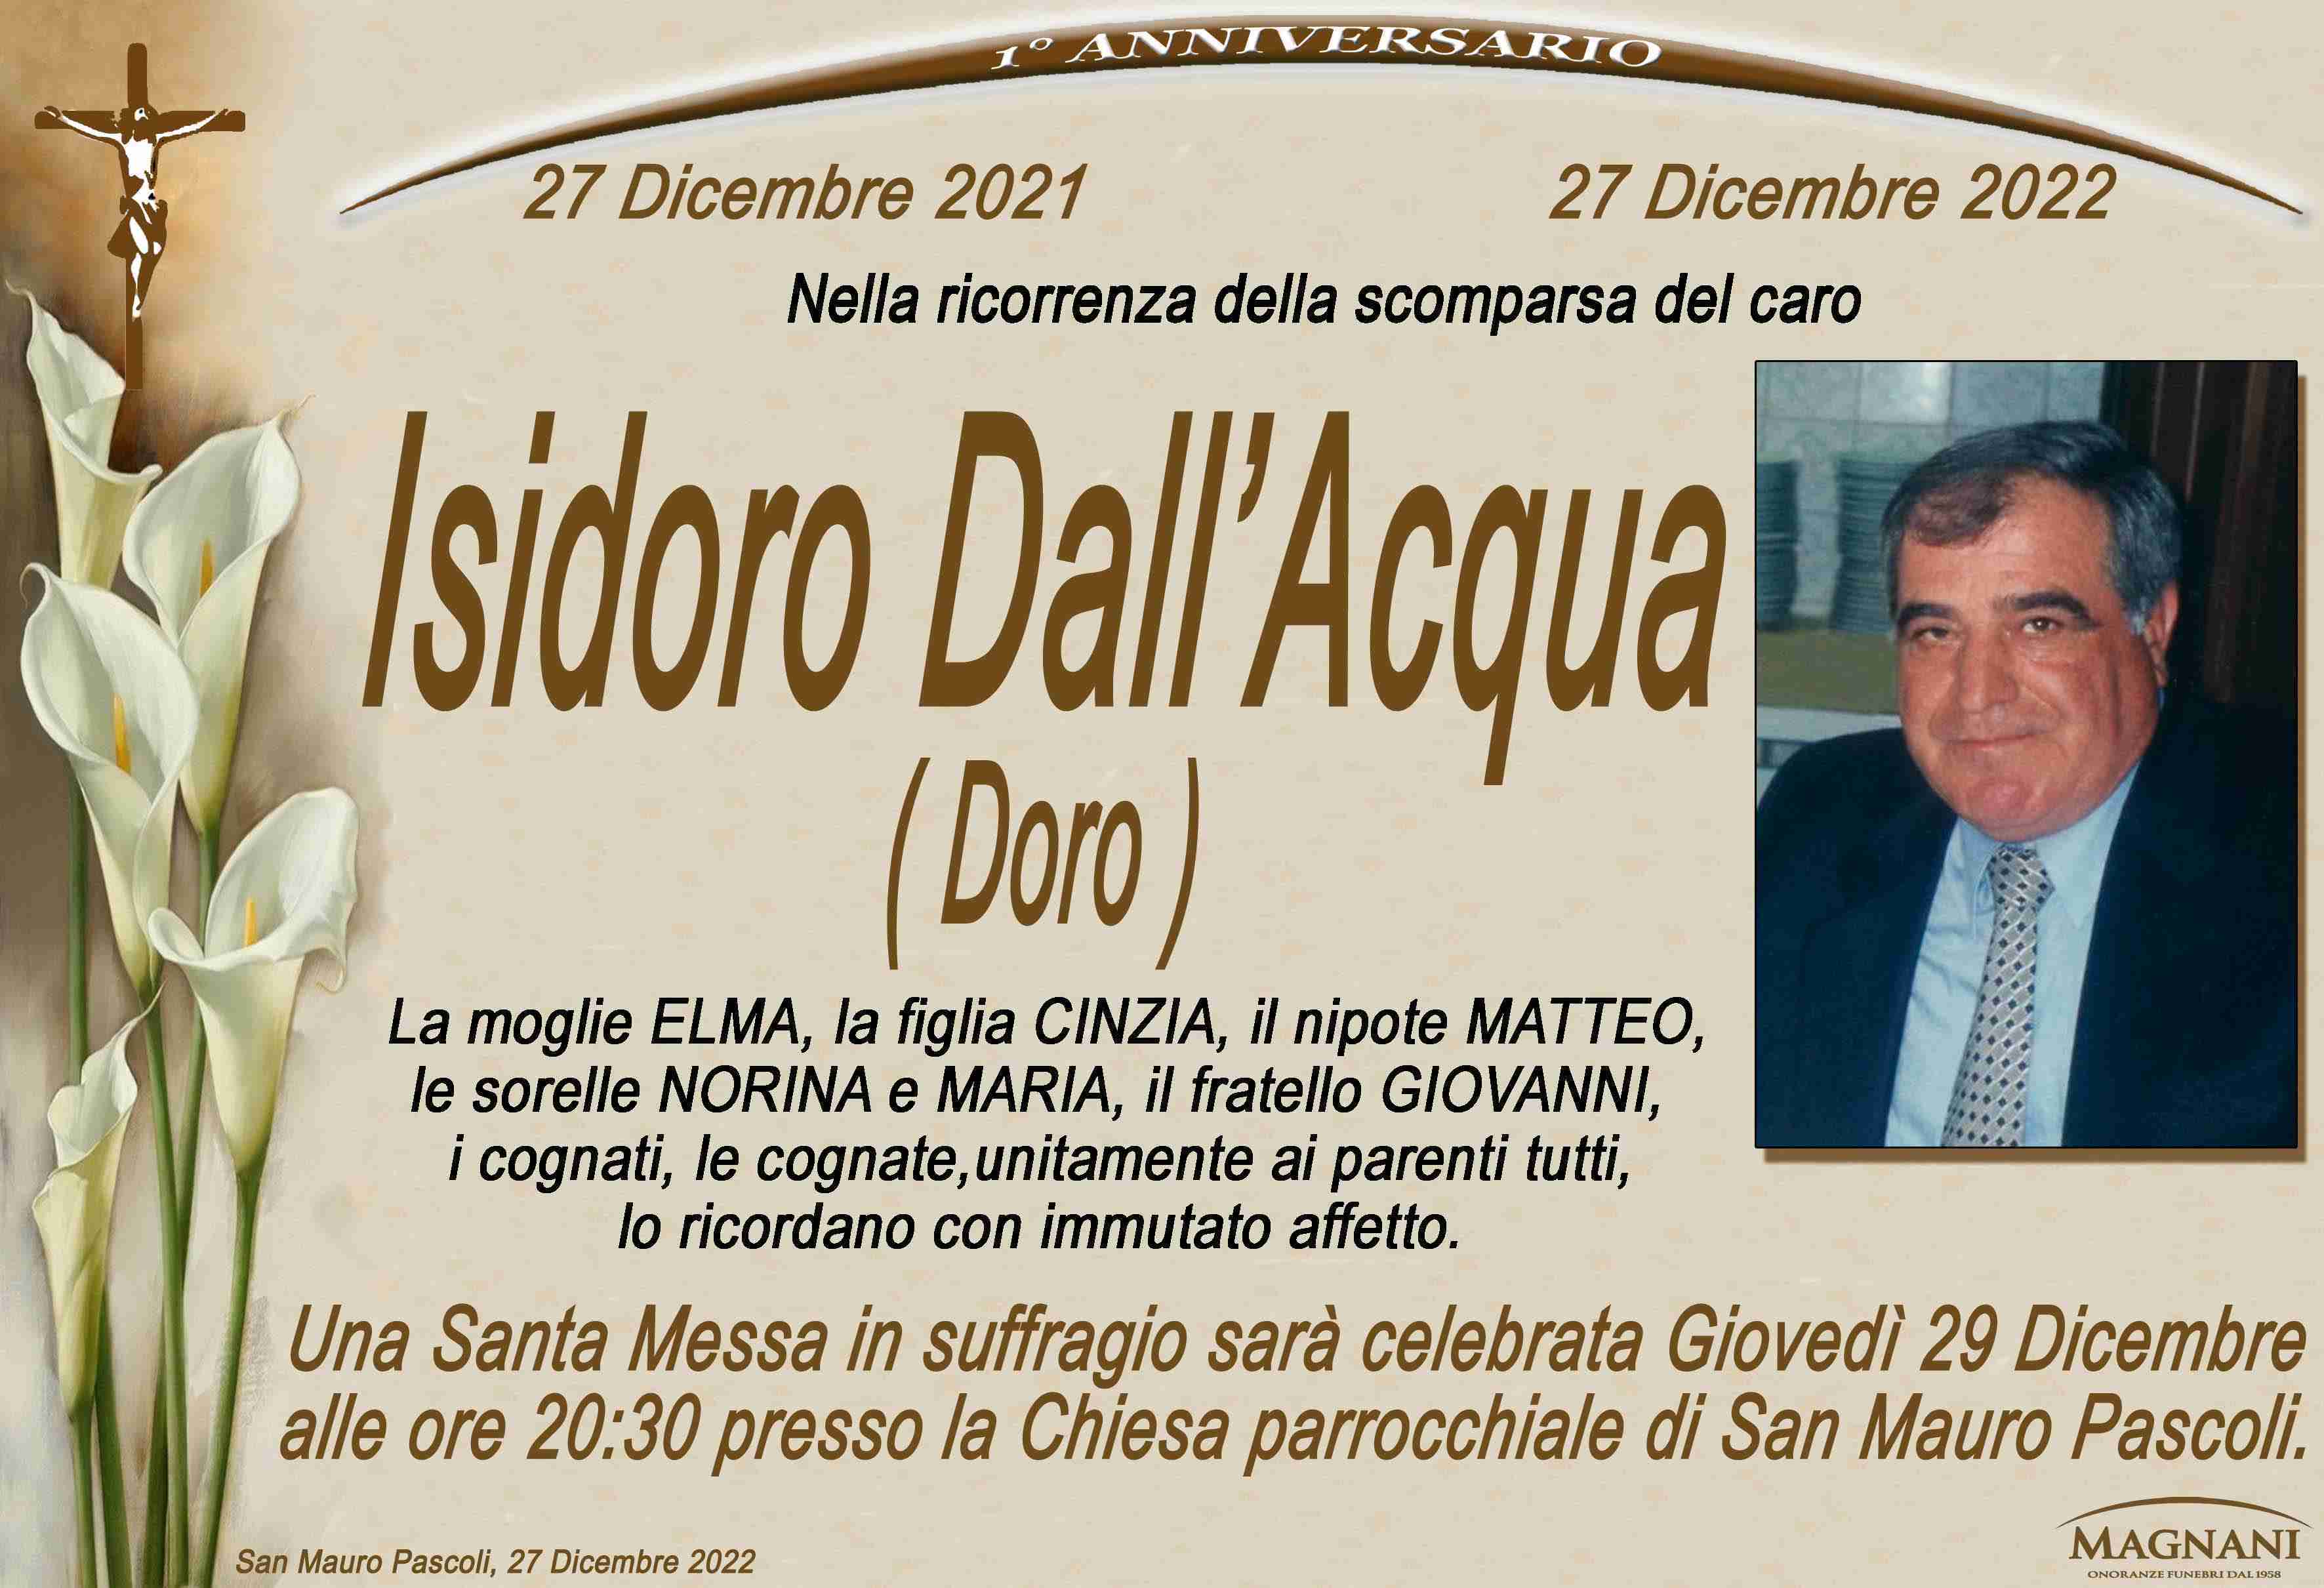 Isidoro Dall'Acqua